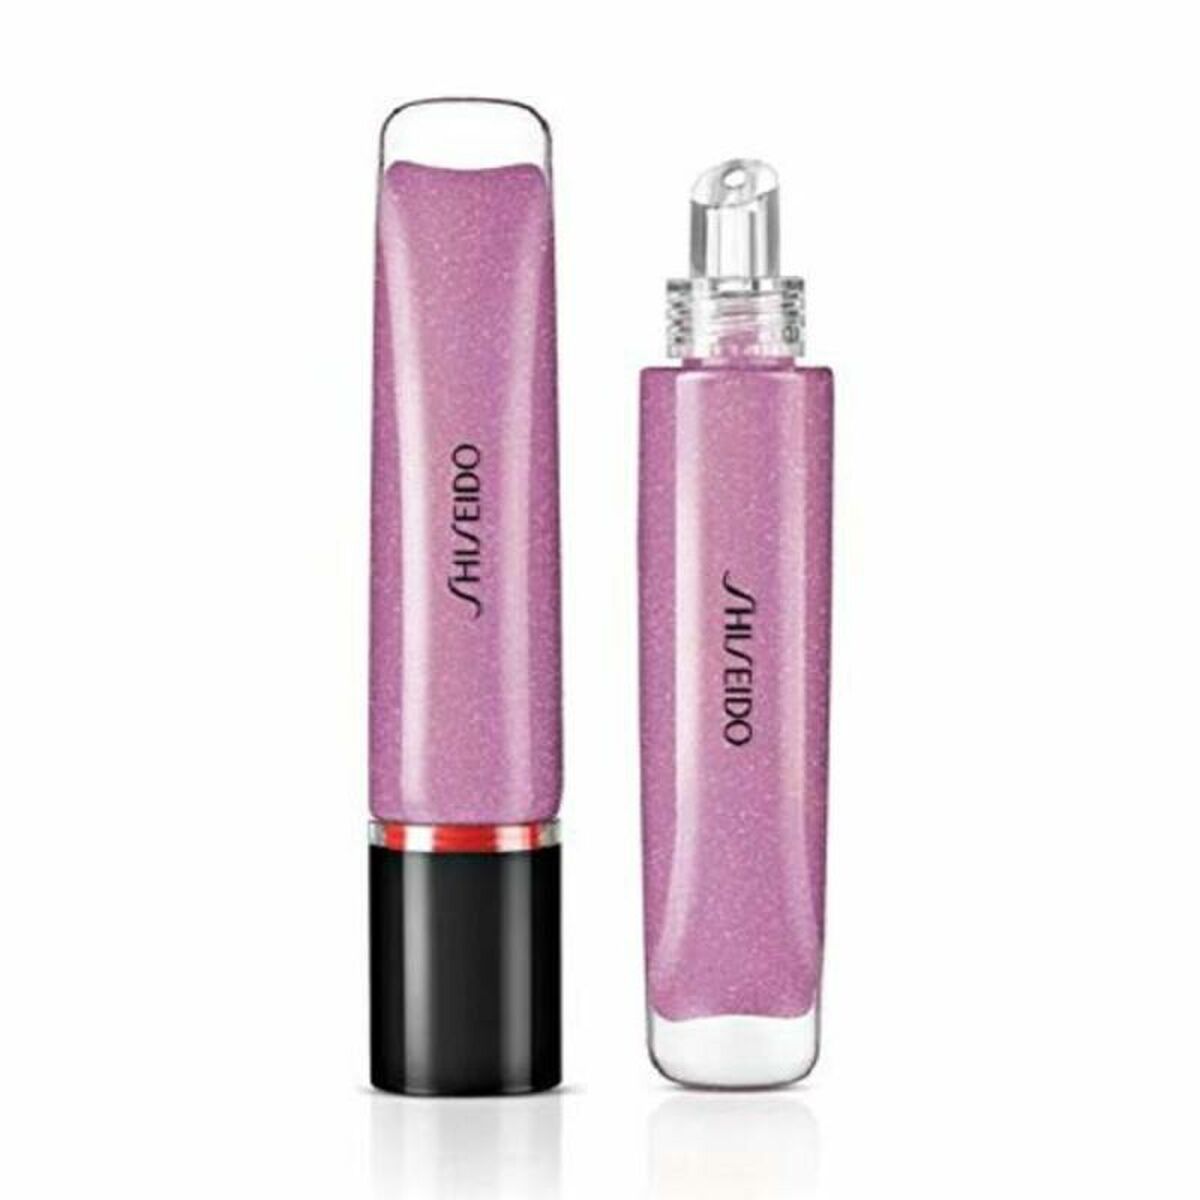 Lip-gloss Shimmer Shiseido (9 ml)-0